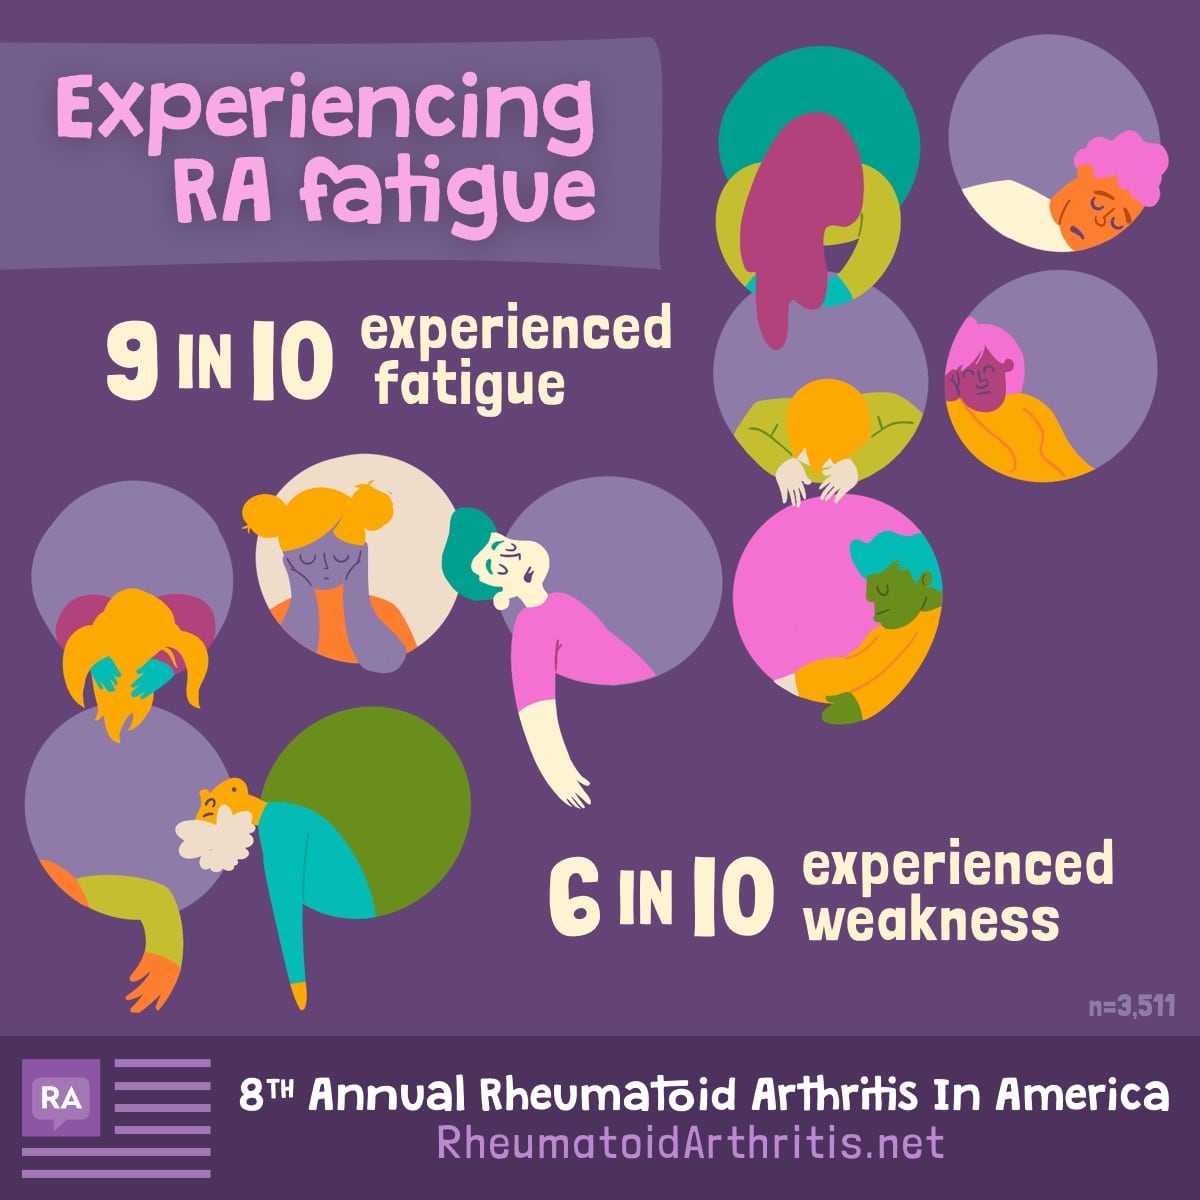 Why Does Rheumatoid Arthritis (RA) Cause Fatigue?